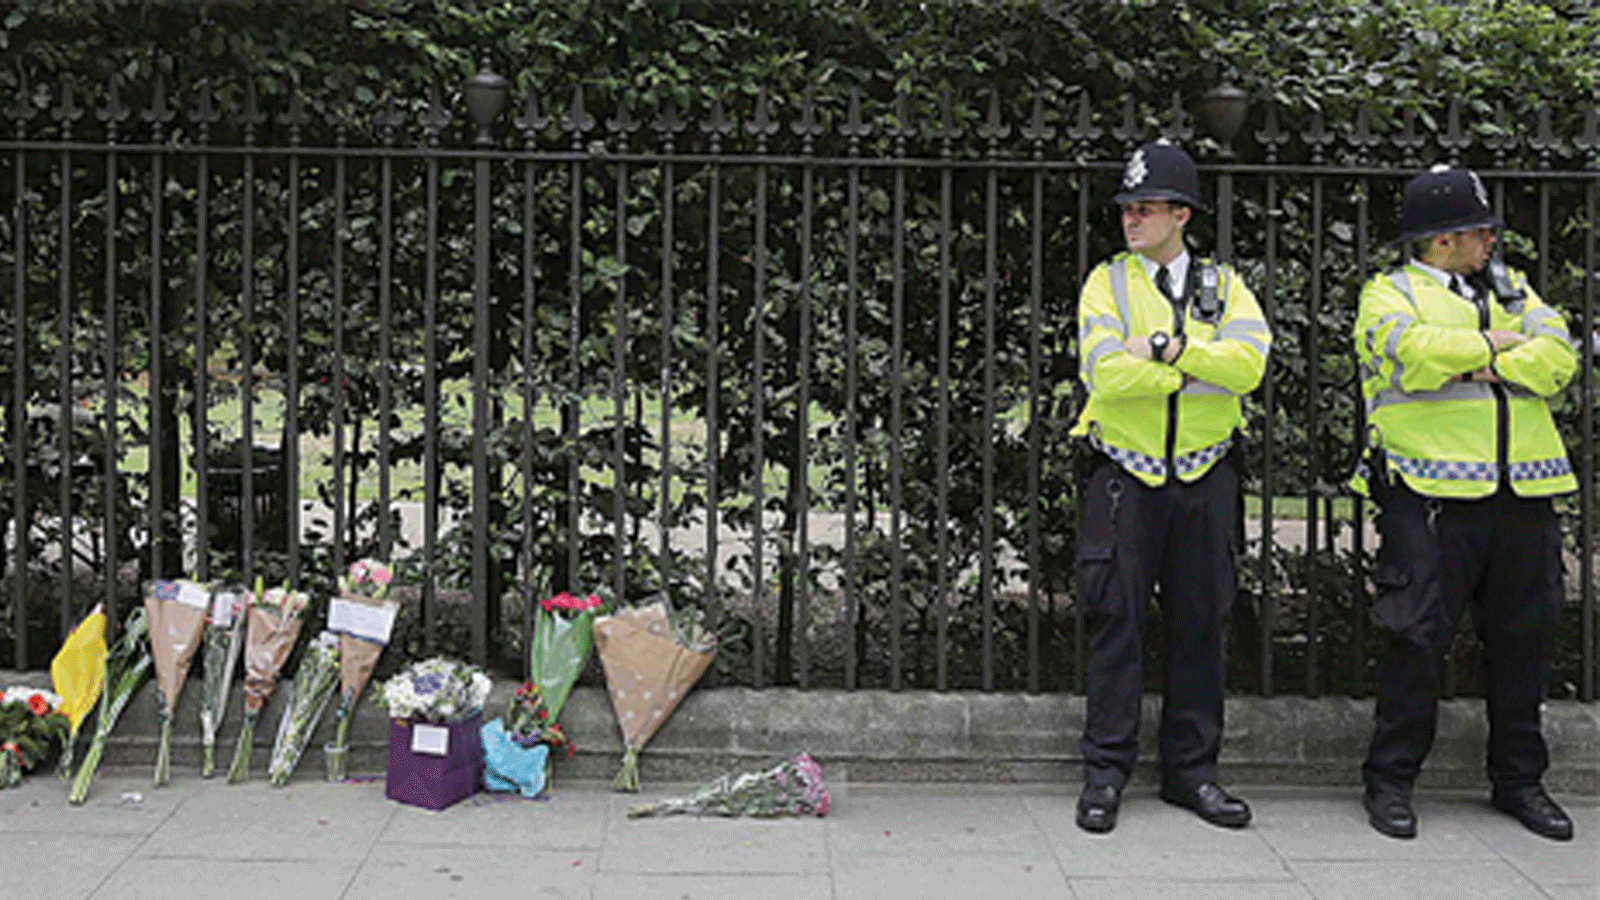 أفراد من الشرطة بجوار الأزهار التي وضعها الناس كتحية لأرواح الضحايا في ميدان راسل بلندن، بتاريخ 3 آب/أغسطس 2016، بعد موجة طعن أدت إلى مقتل امرأة وإصابة خمسة آخرين.